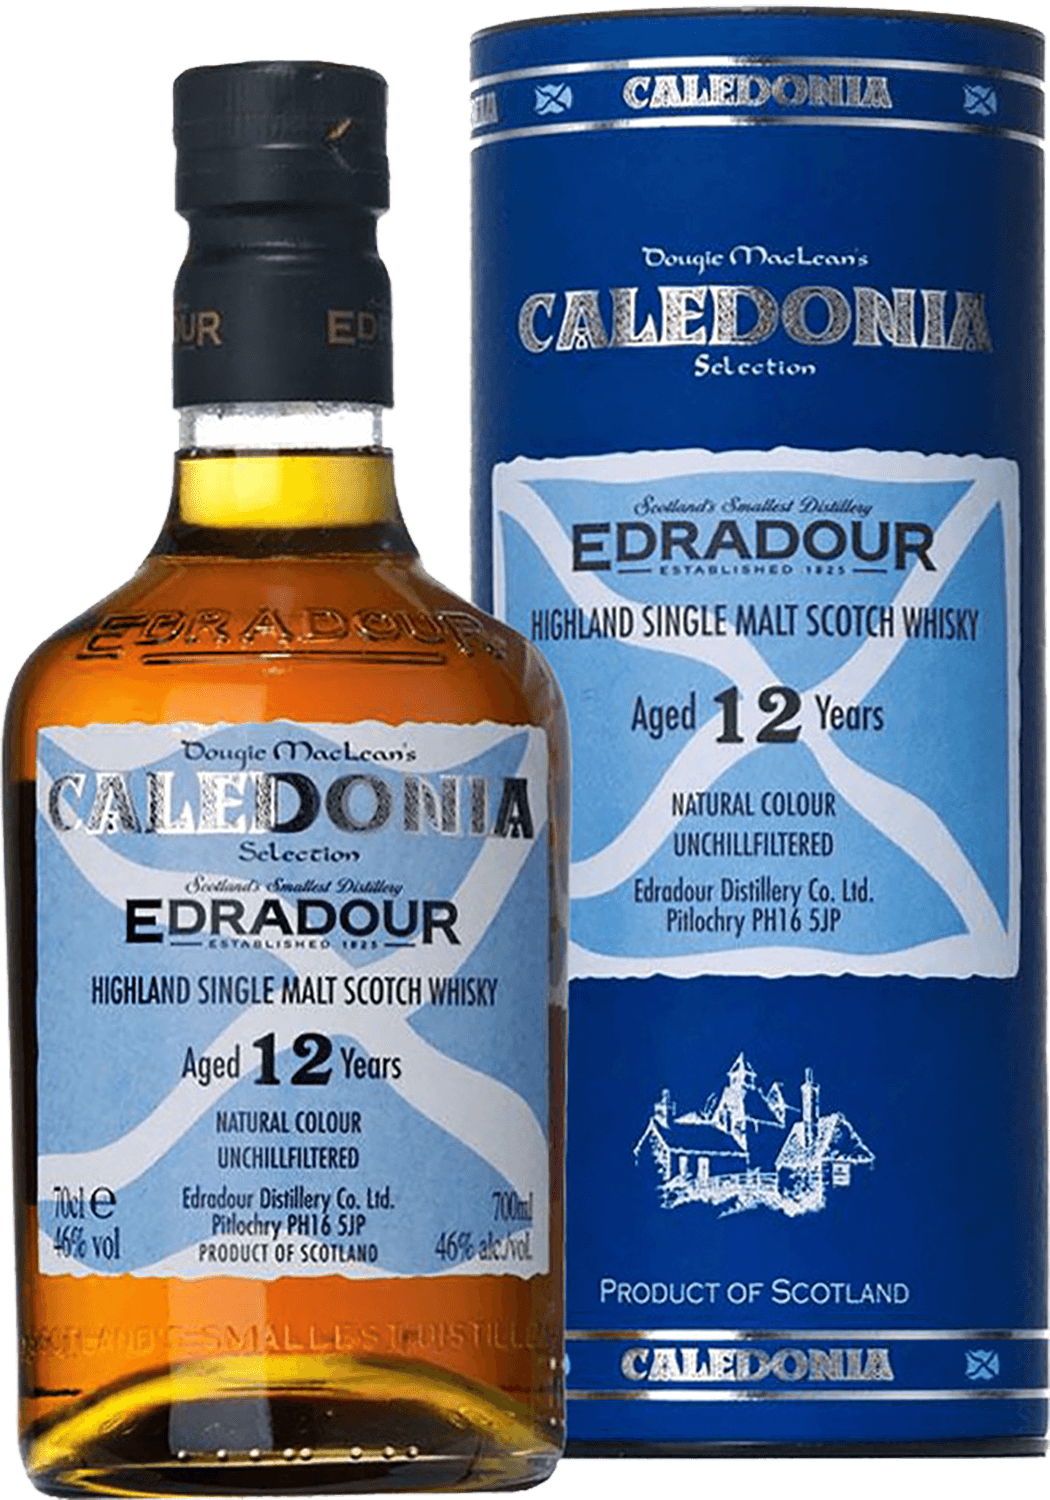 Edradour Caledonia Highland Single Malt Scotch Whisky 12 y.o. (gift box) royal brackla 12 y o highland single malt scotch whisky gift box